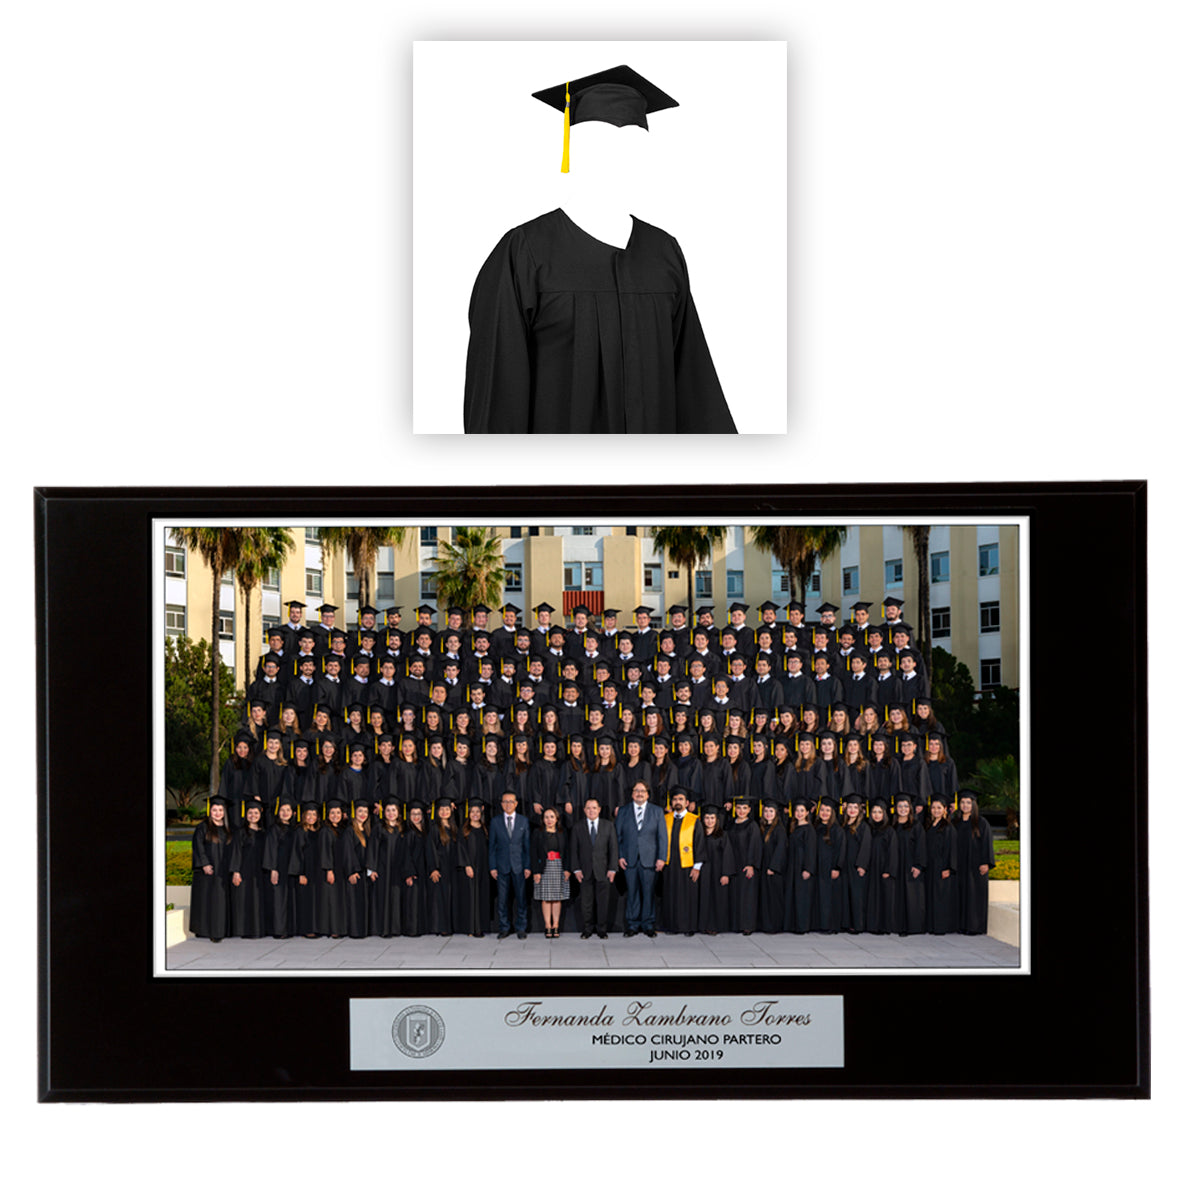 Modelo 20 (Foto 9x17" con placa plateada y base negra) + renta de toga y birrete para foto y acto académico